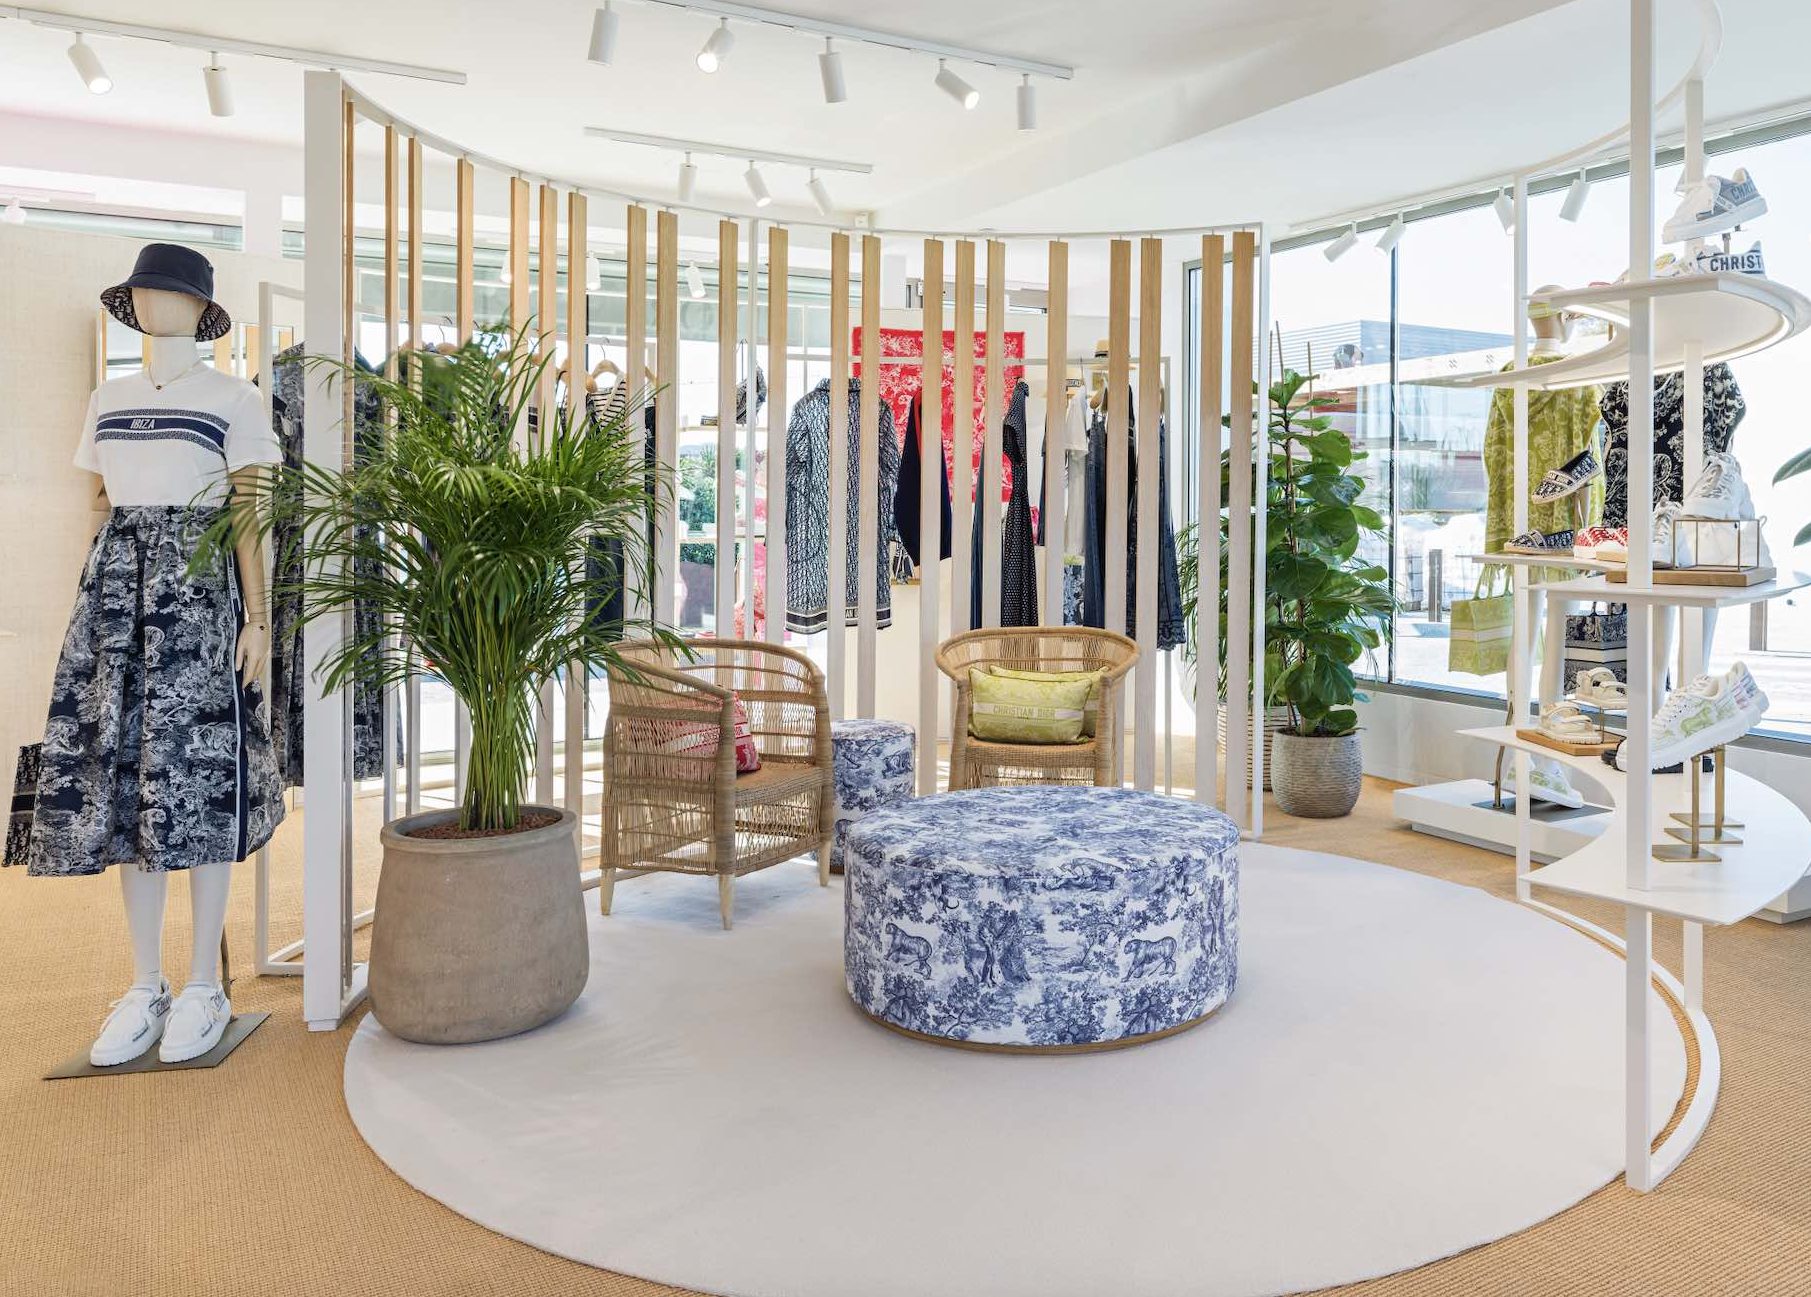 Dior abre en Ibiza su impresionante pop-up para la temporada estival